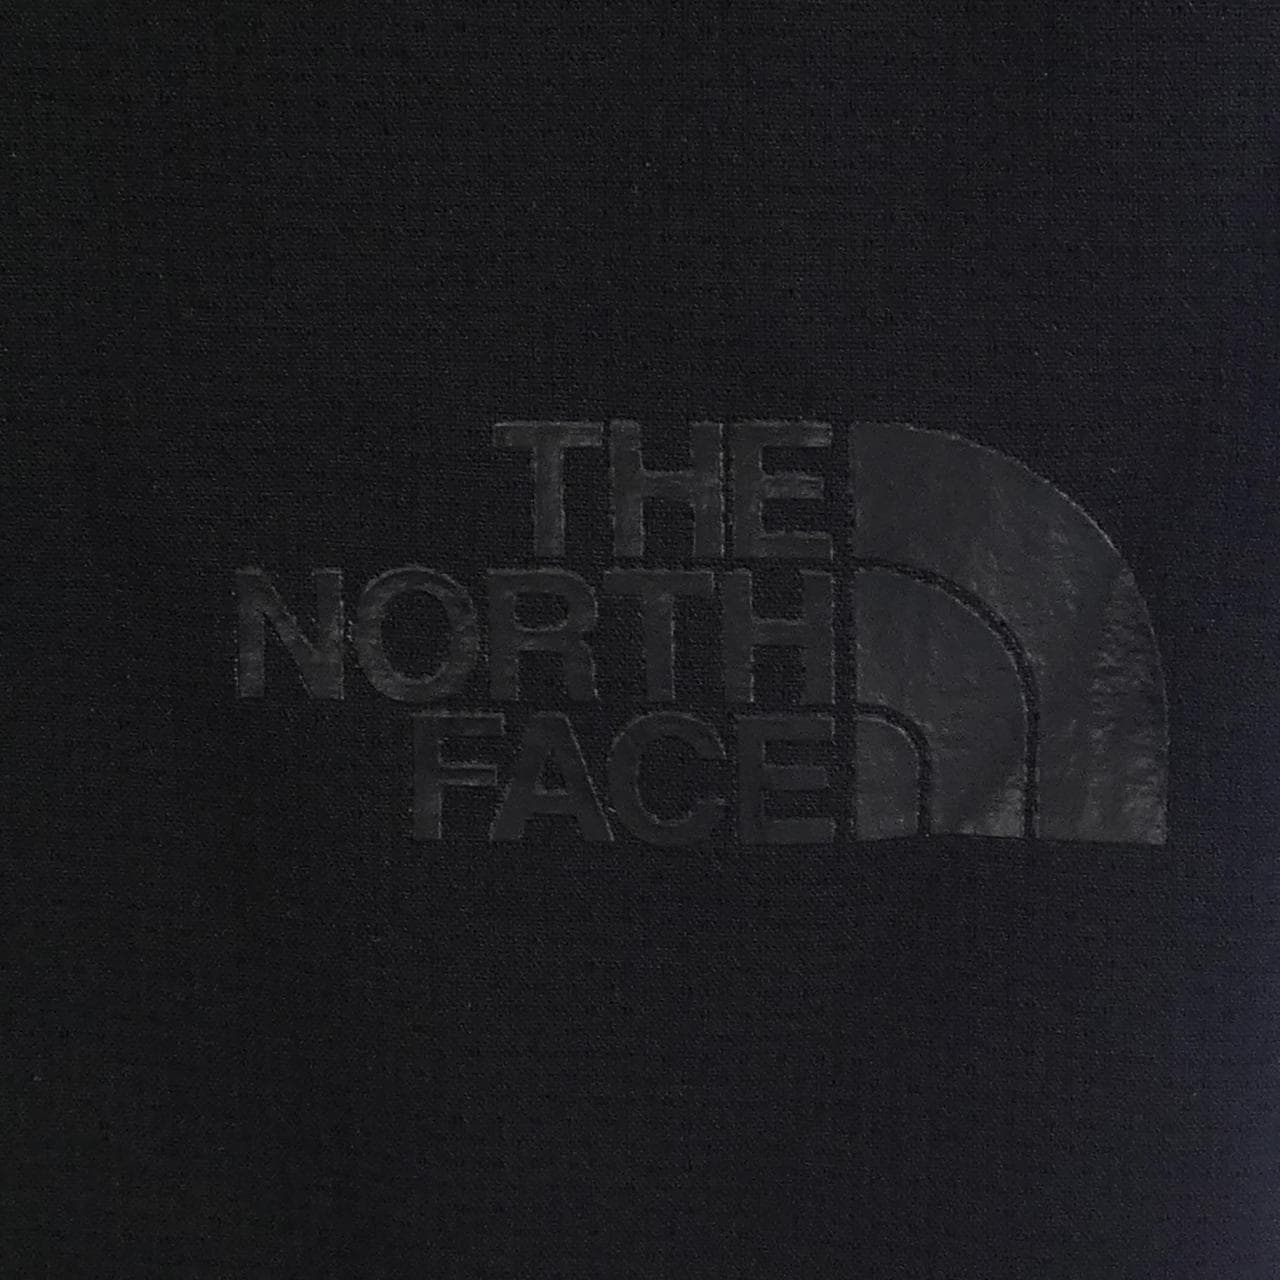 ザノースフェイス THE NORTH FACE パンツ